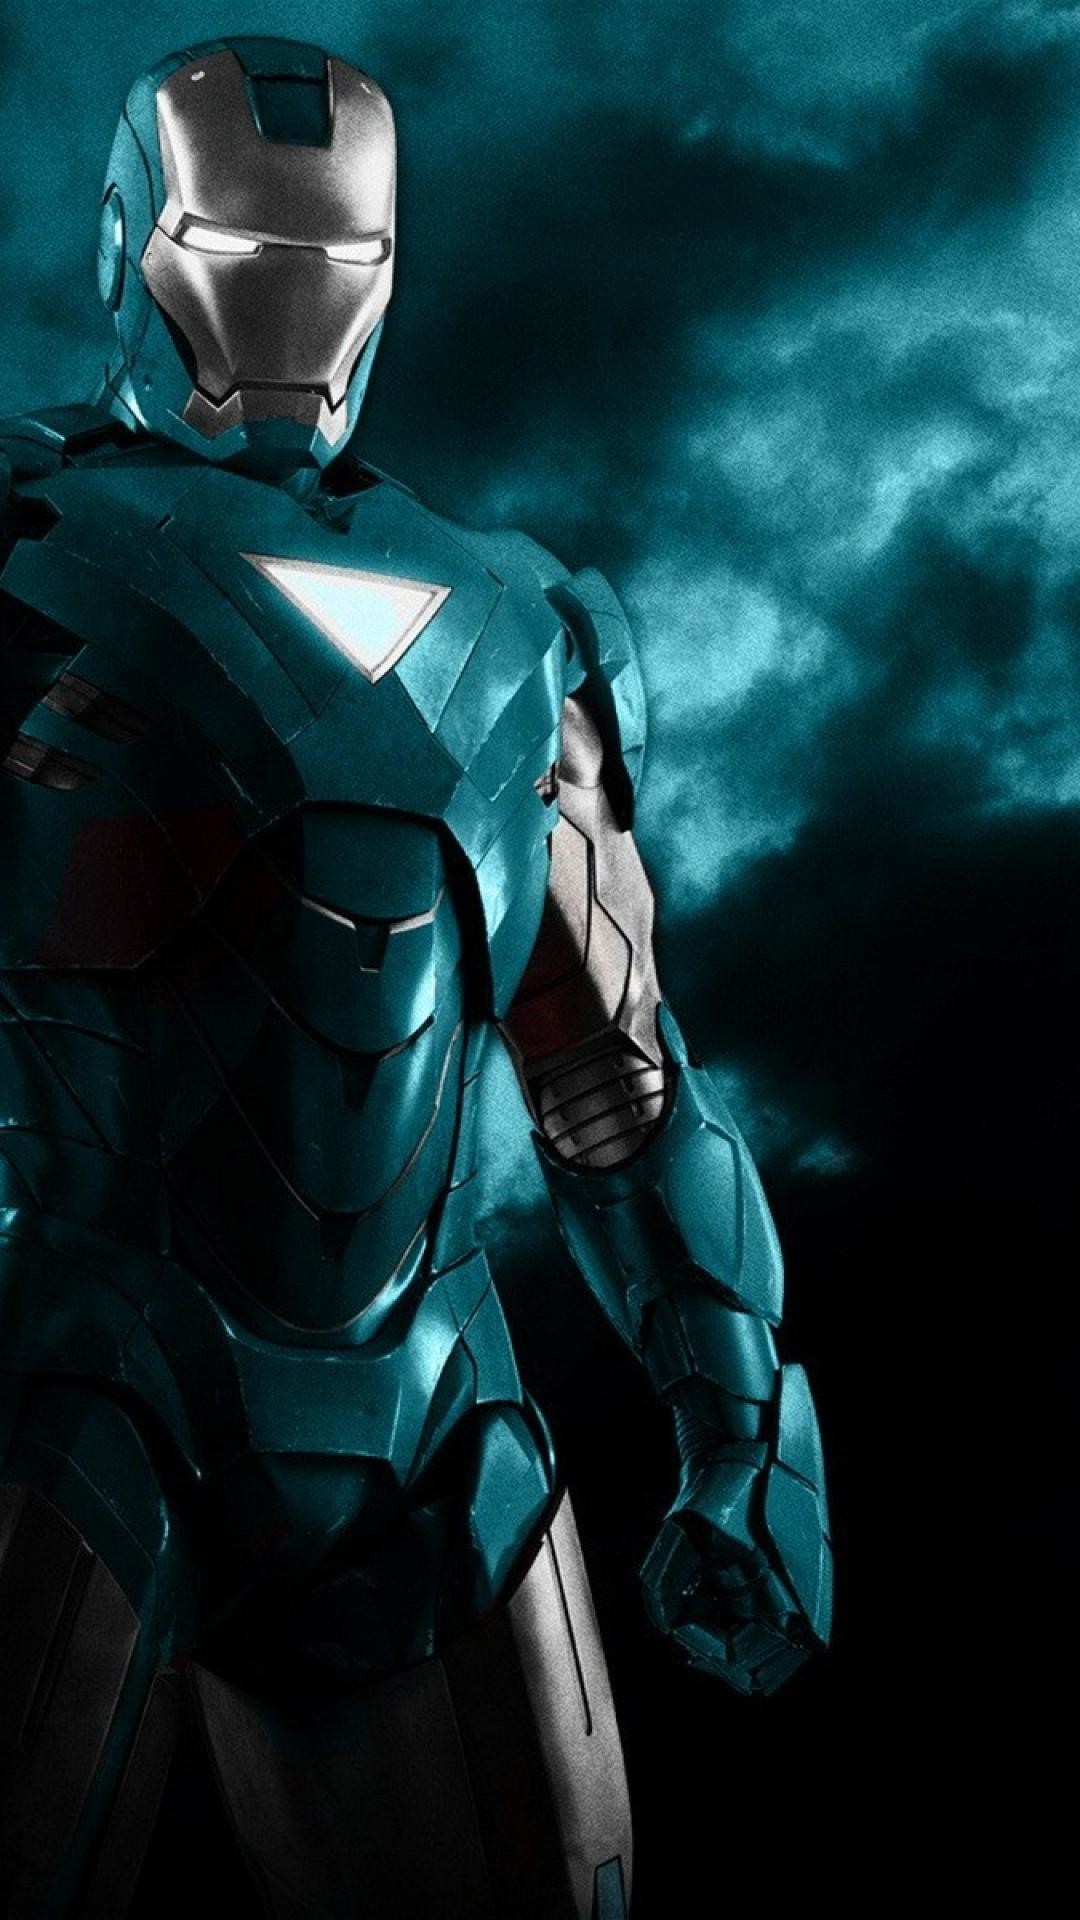 Hình nền Iron Man Jarvis HD là lựa chọn tuyệt vời cho những ai yêu thích Jarvis - trợ lý thông minh của Tony Stark. Những bức ảnh nền về Jarvis và Iron Man sẽ mang lại cho điện thoại hay máy tính của bạn một diện mạo hoàn toàn mới lạ và sáng tạo. Tải ngay bộ sưu tập hình nền Iron Man Jarvis HD để chọn lựa cho mình bức ảnh nền yêu thích nhất.